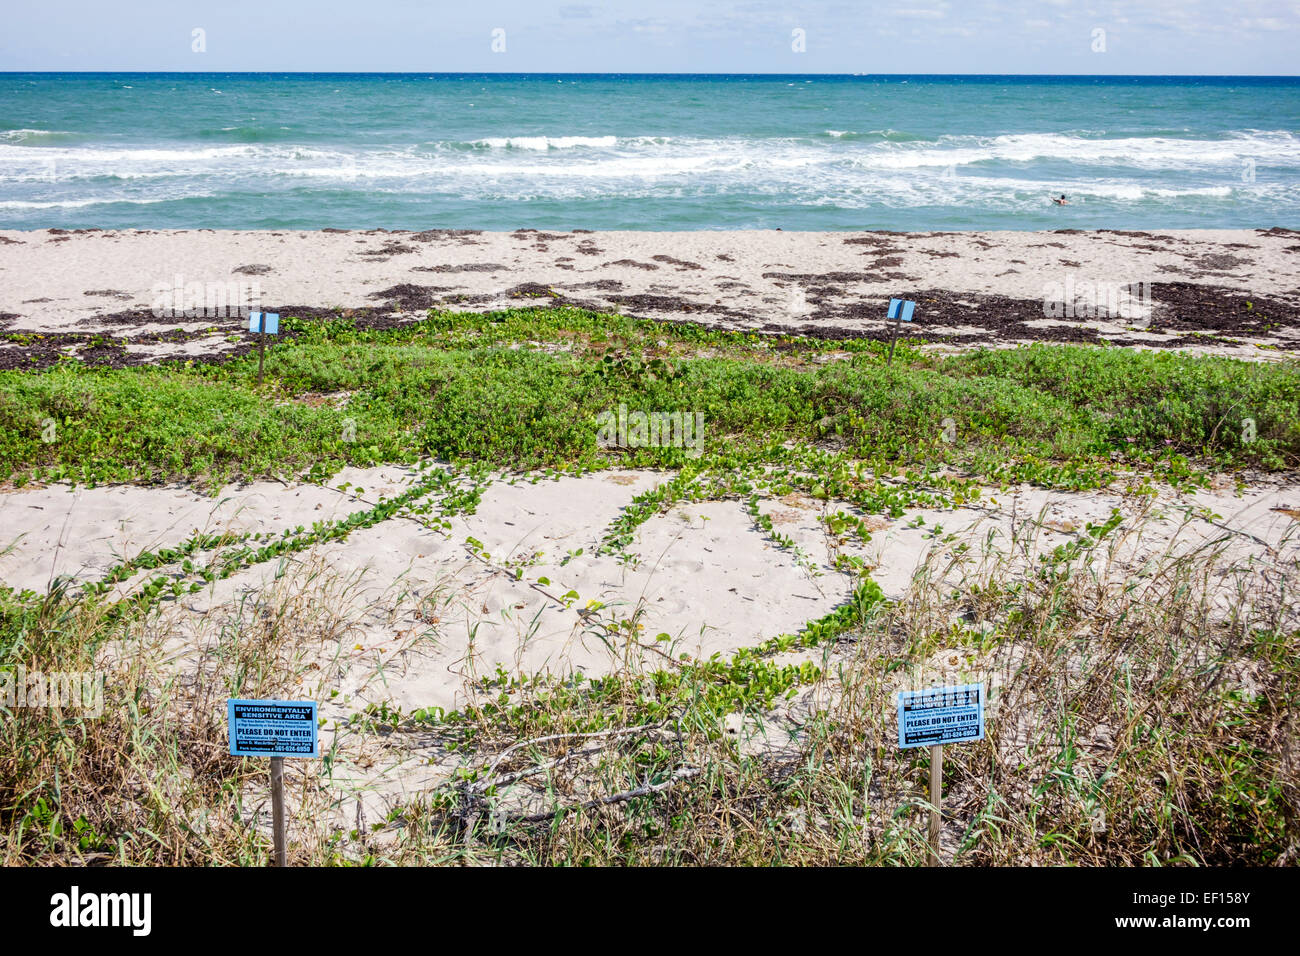 Riviera Beach Florida, North Palm Beach, John D. MacArthur Beach State Park, eau, nature, surf, océan Atlantique, plage, sable, panneau, ne sont pas sensibles à l'environnement Banque D'Images